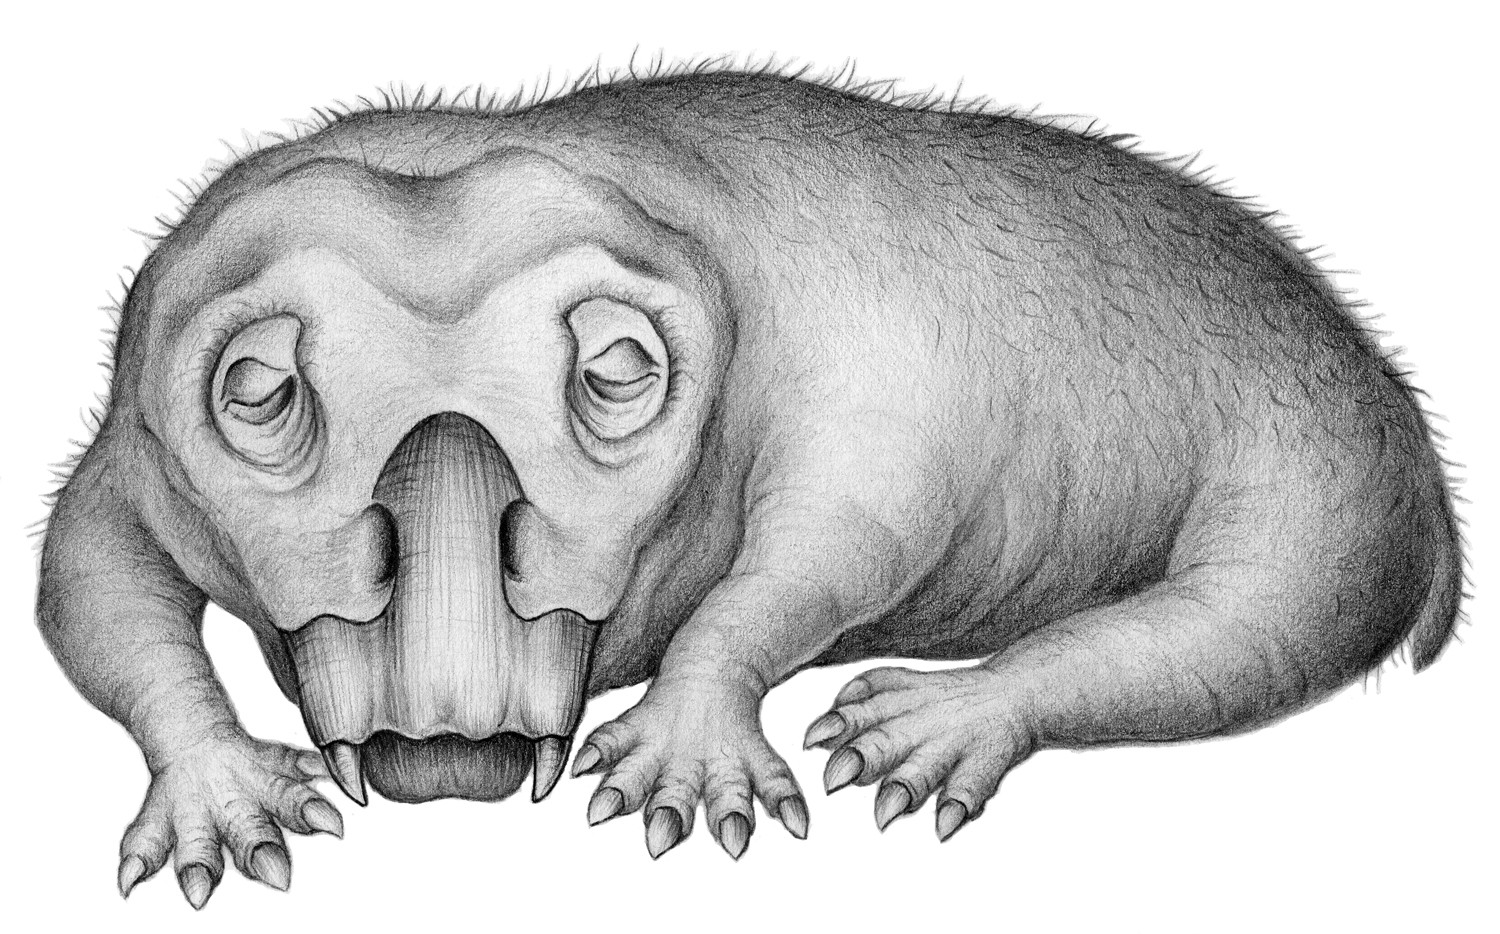 Vertebrado encontrado na Antártida já hibernava há 250 milhões de anos. Acima: reprodução artística de um Lystrosaurus (Foto: Crystal Shin)